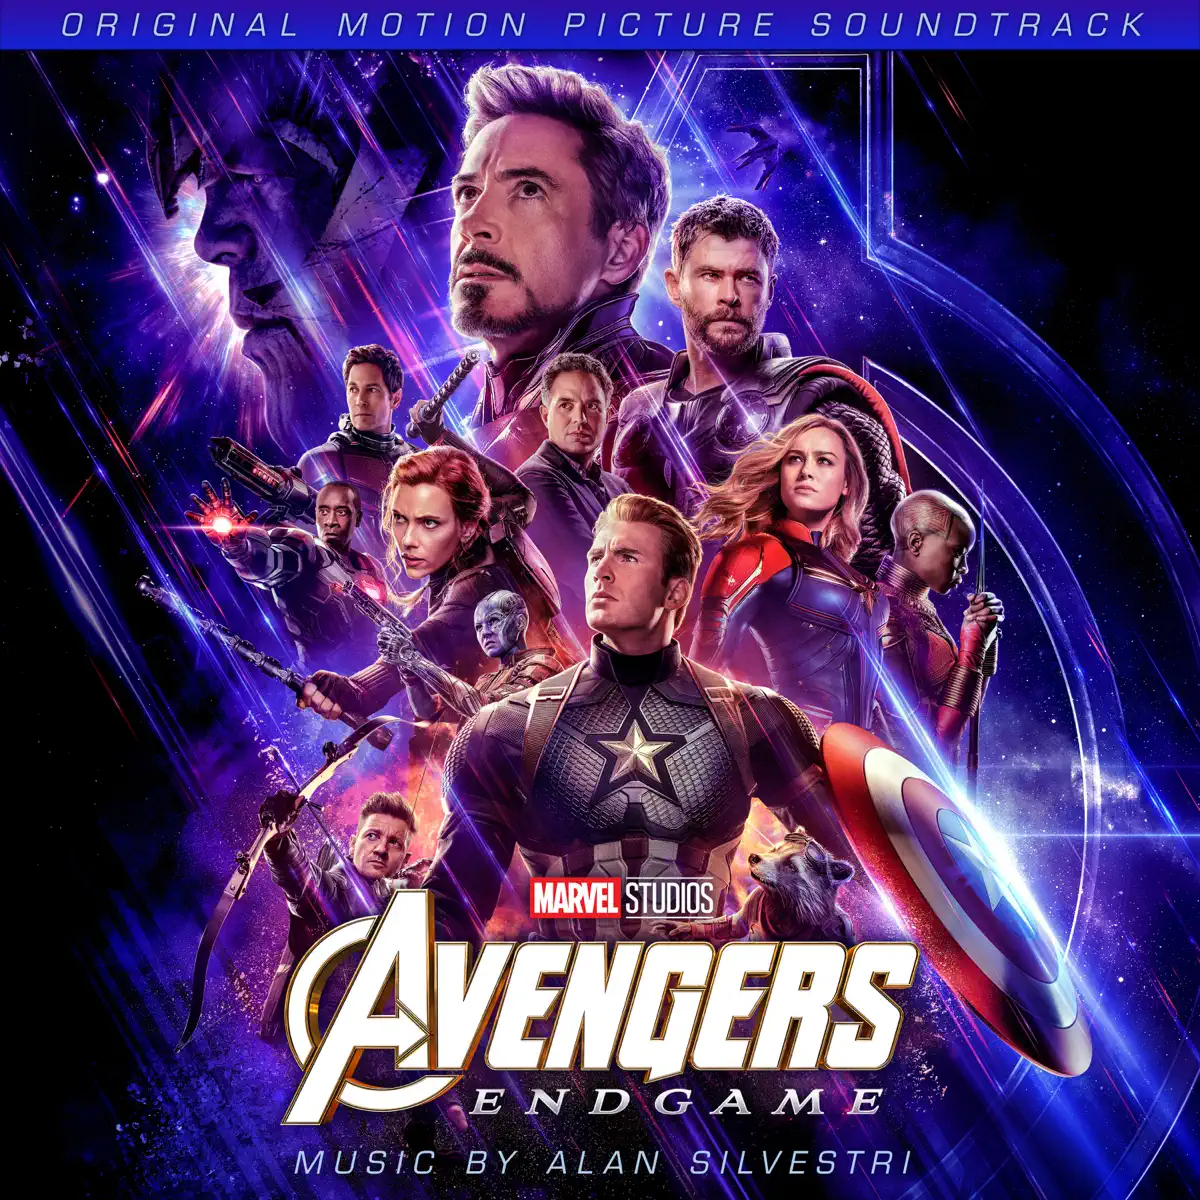 Alan Silvestri - 復仇者聯盟4: 終局之戰 Avengers: Endgame (Original Motion Picture Soundtrack) (2019) [iTunes Plus AAC M4A]-新房子